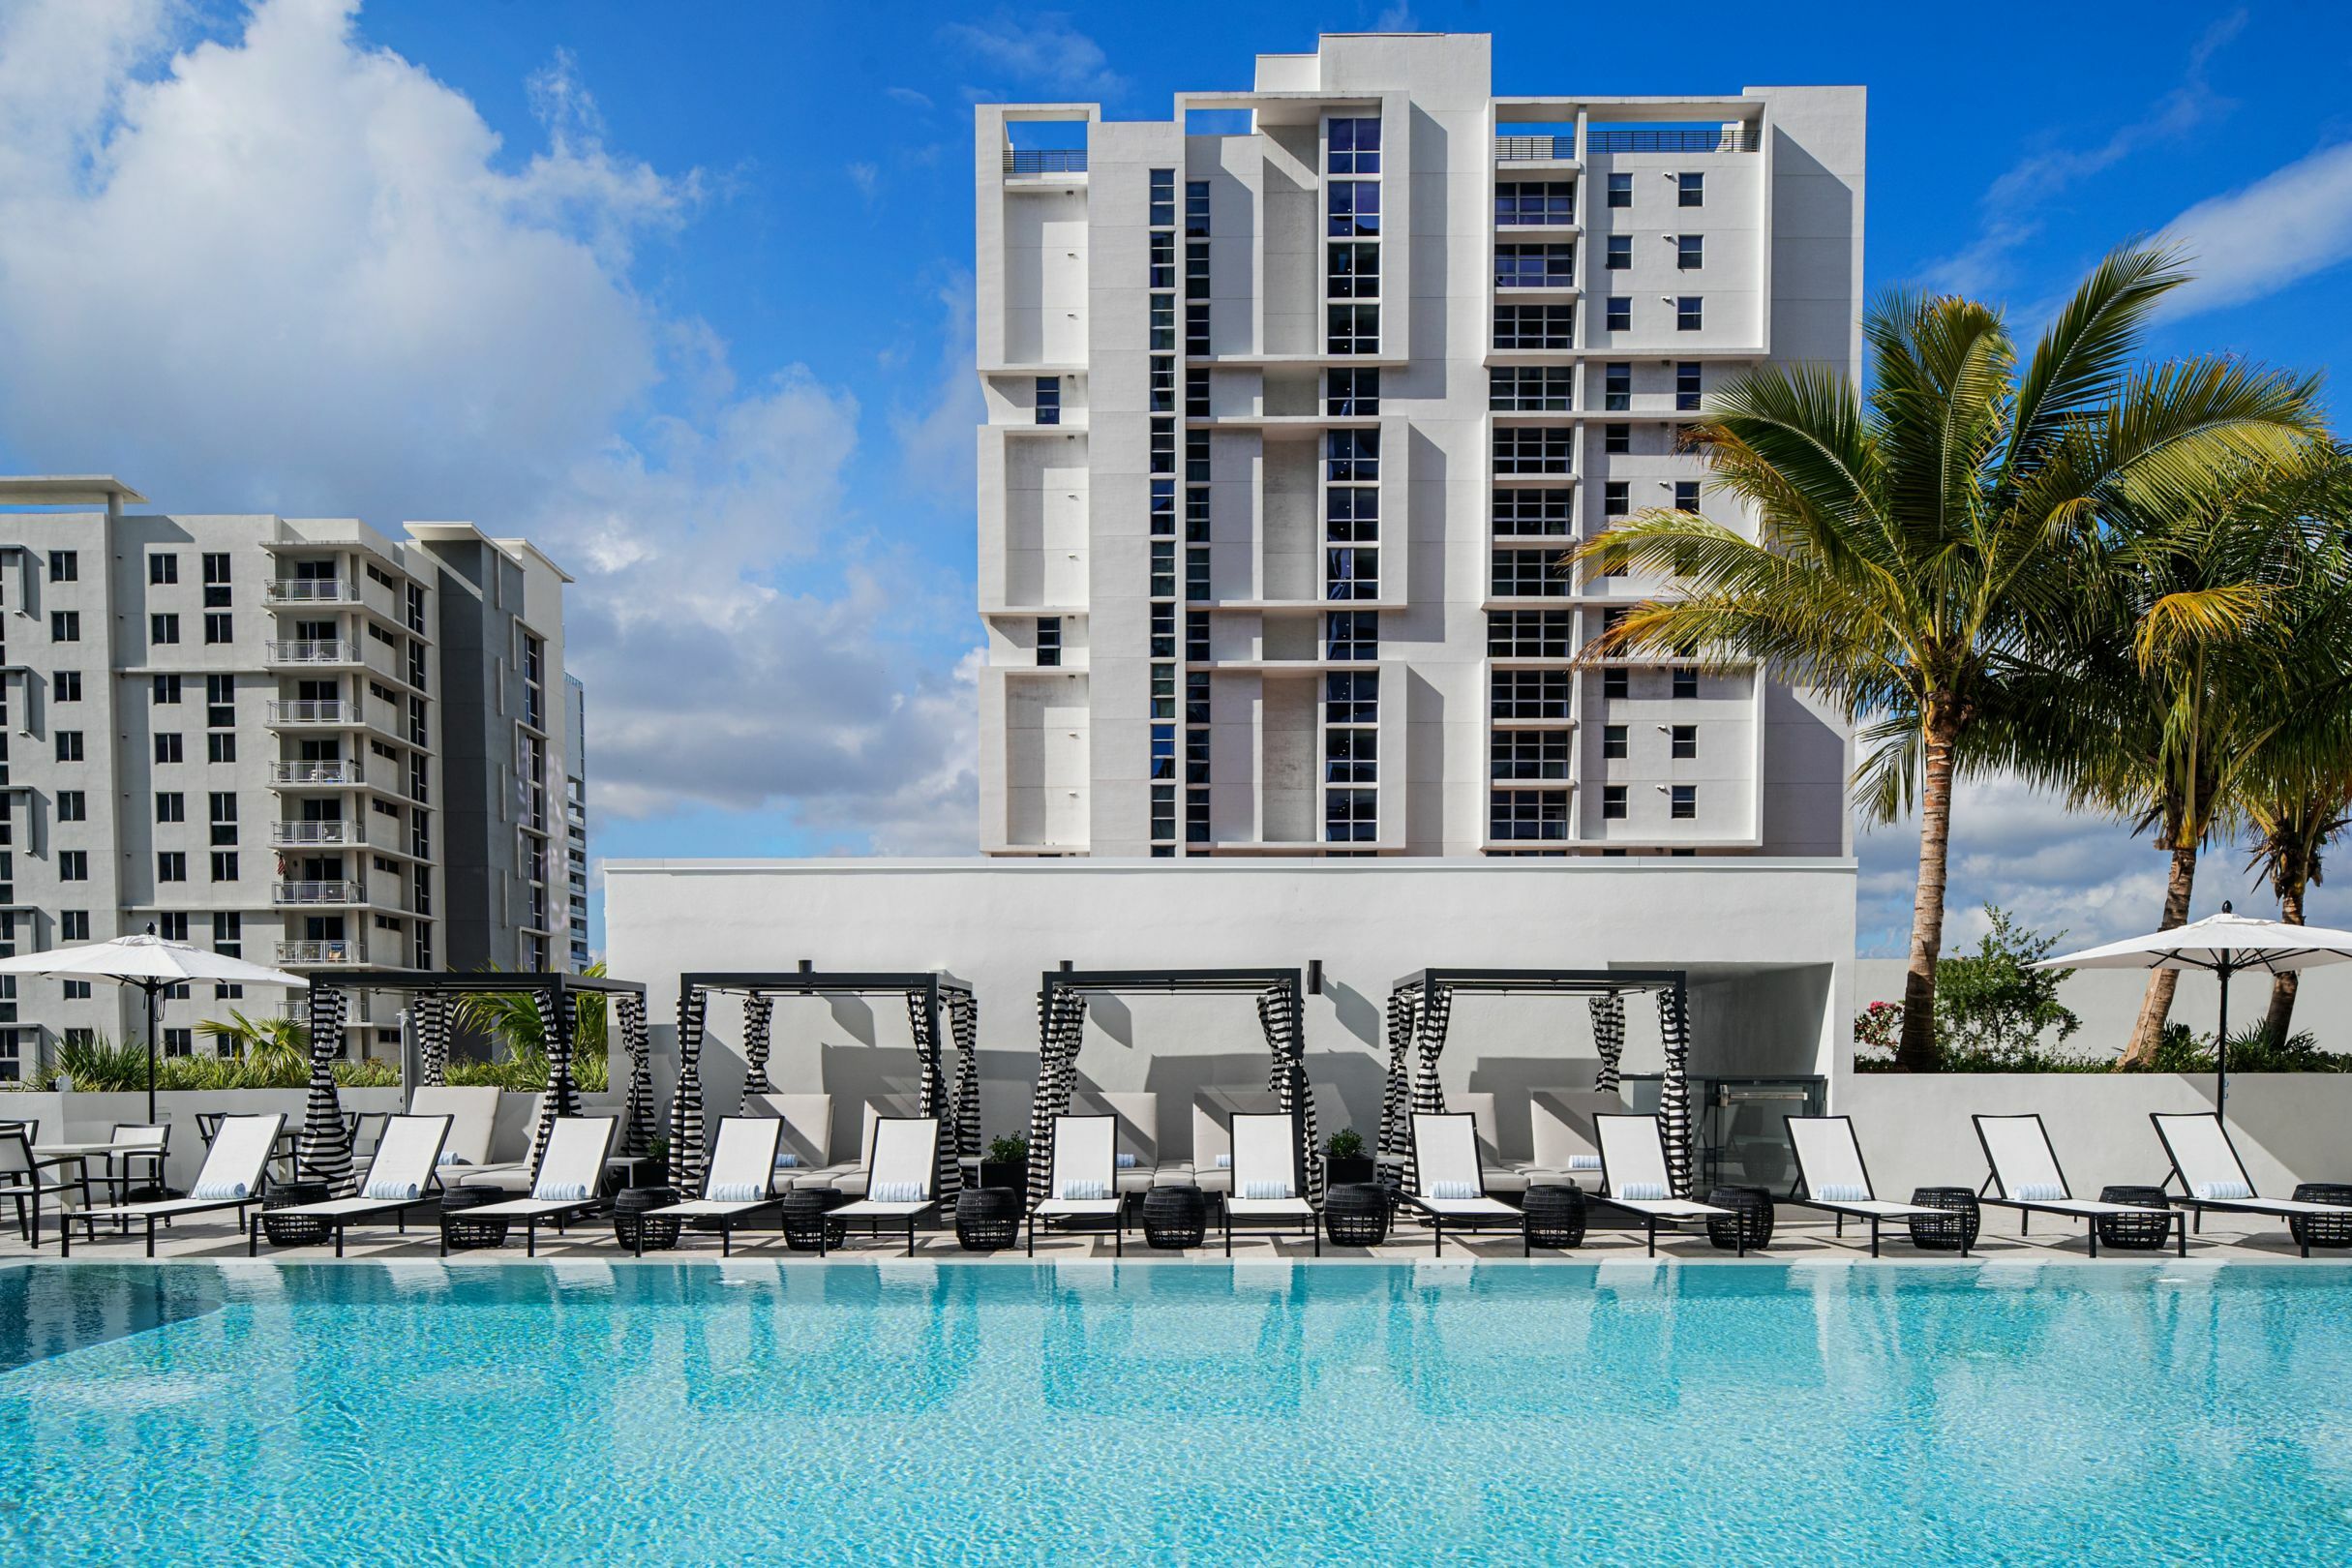 Photo of AC Hotel Miami Brickell, Miami, FL